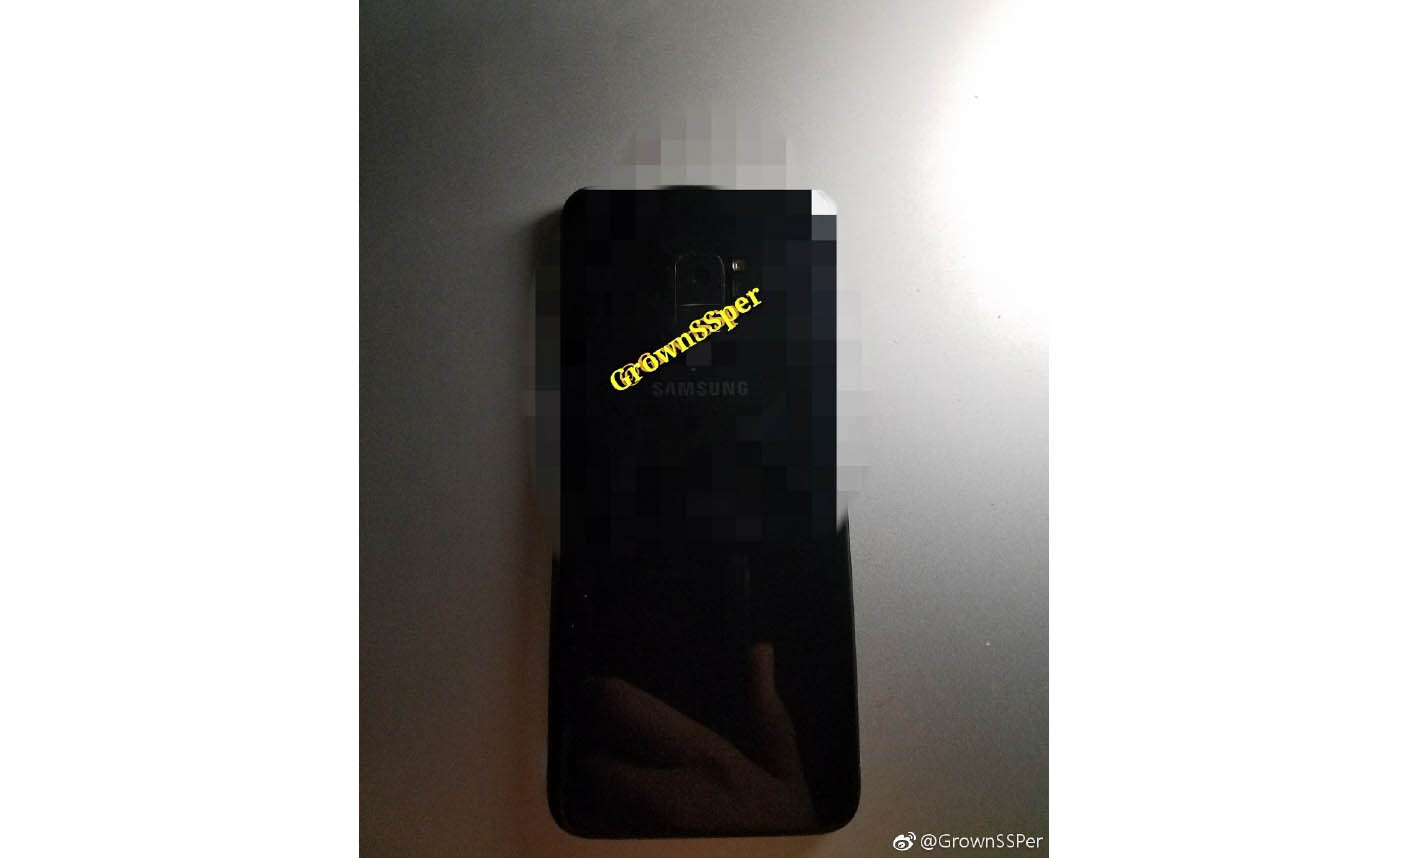 Rò rỉ hình ảnh một
thiết bị
Samsung lạ với cảm biến vân tay ở mặt lưng, có phải là
Galaxy S9?